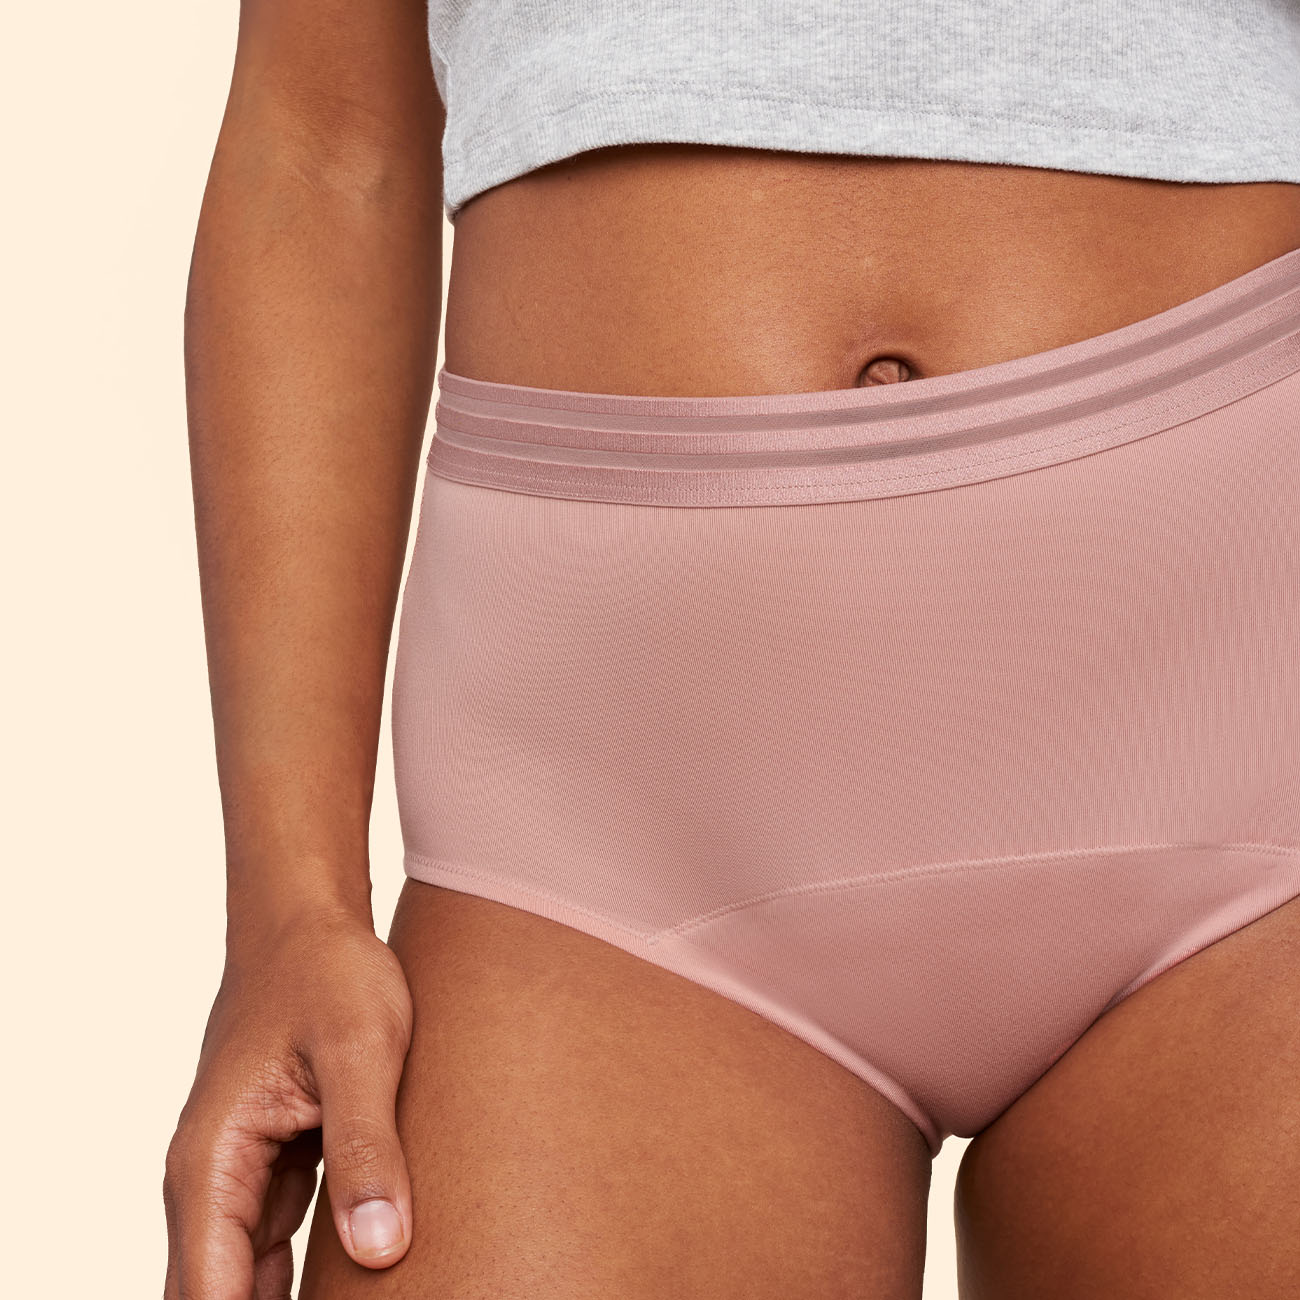  Speax by Thinx Hi-Waist Incontinence Underwear for Women,  Washable Incontinence Underwear Women, Postpartum Underwear Feminine Care,  Navy, X-Small : Health & Household